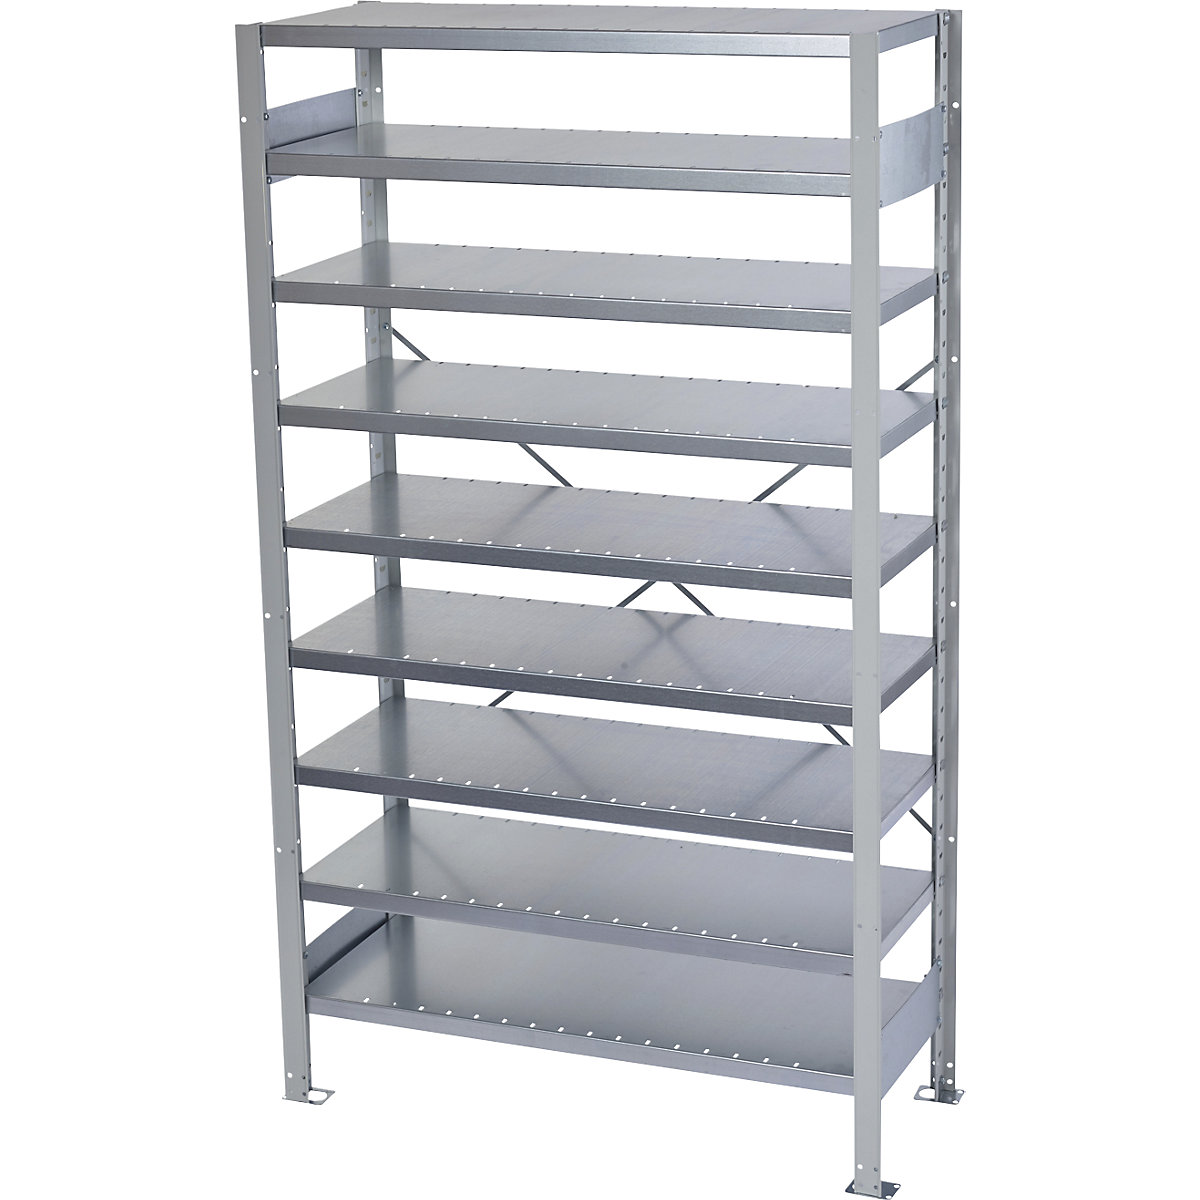 Boltless shelving unit for shelf bins - STEMO